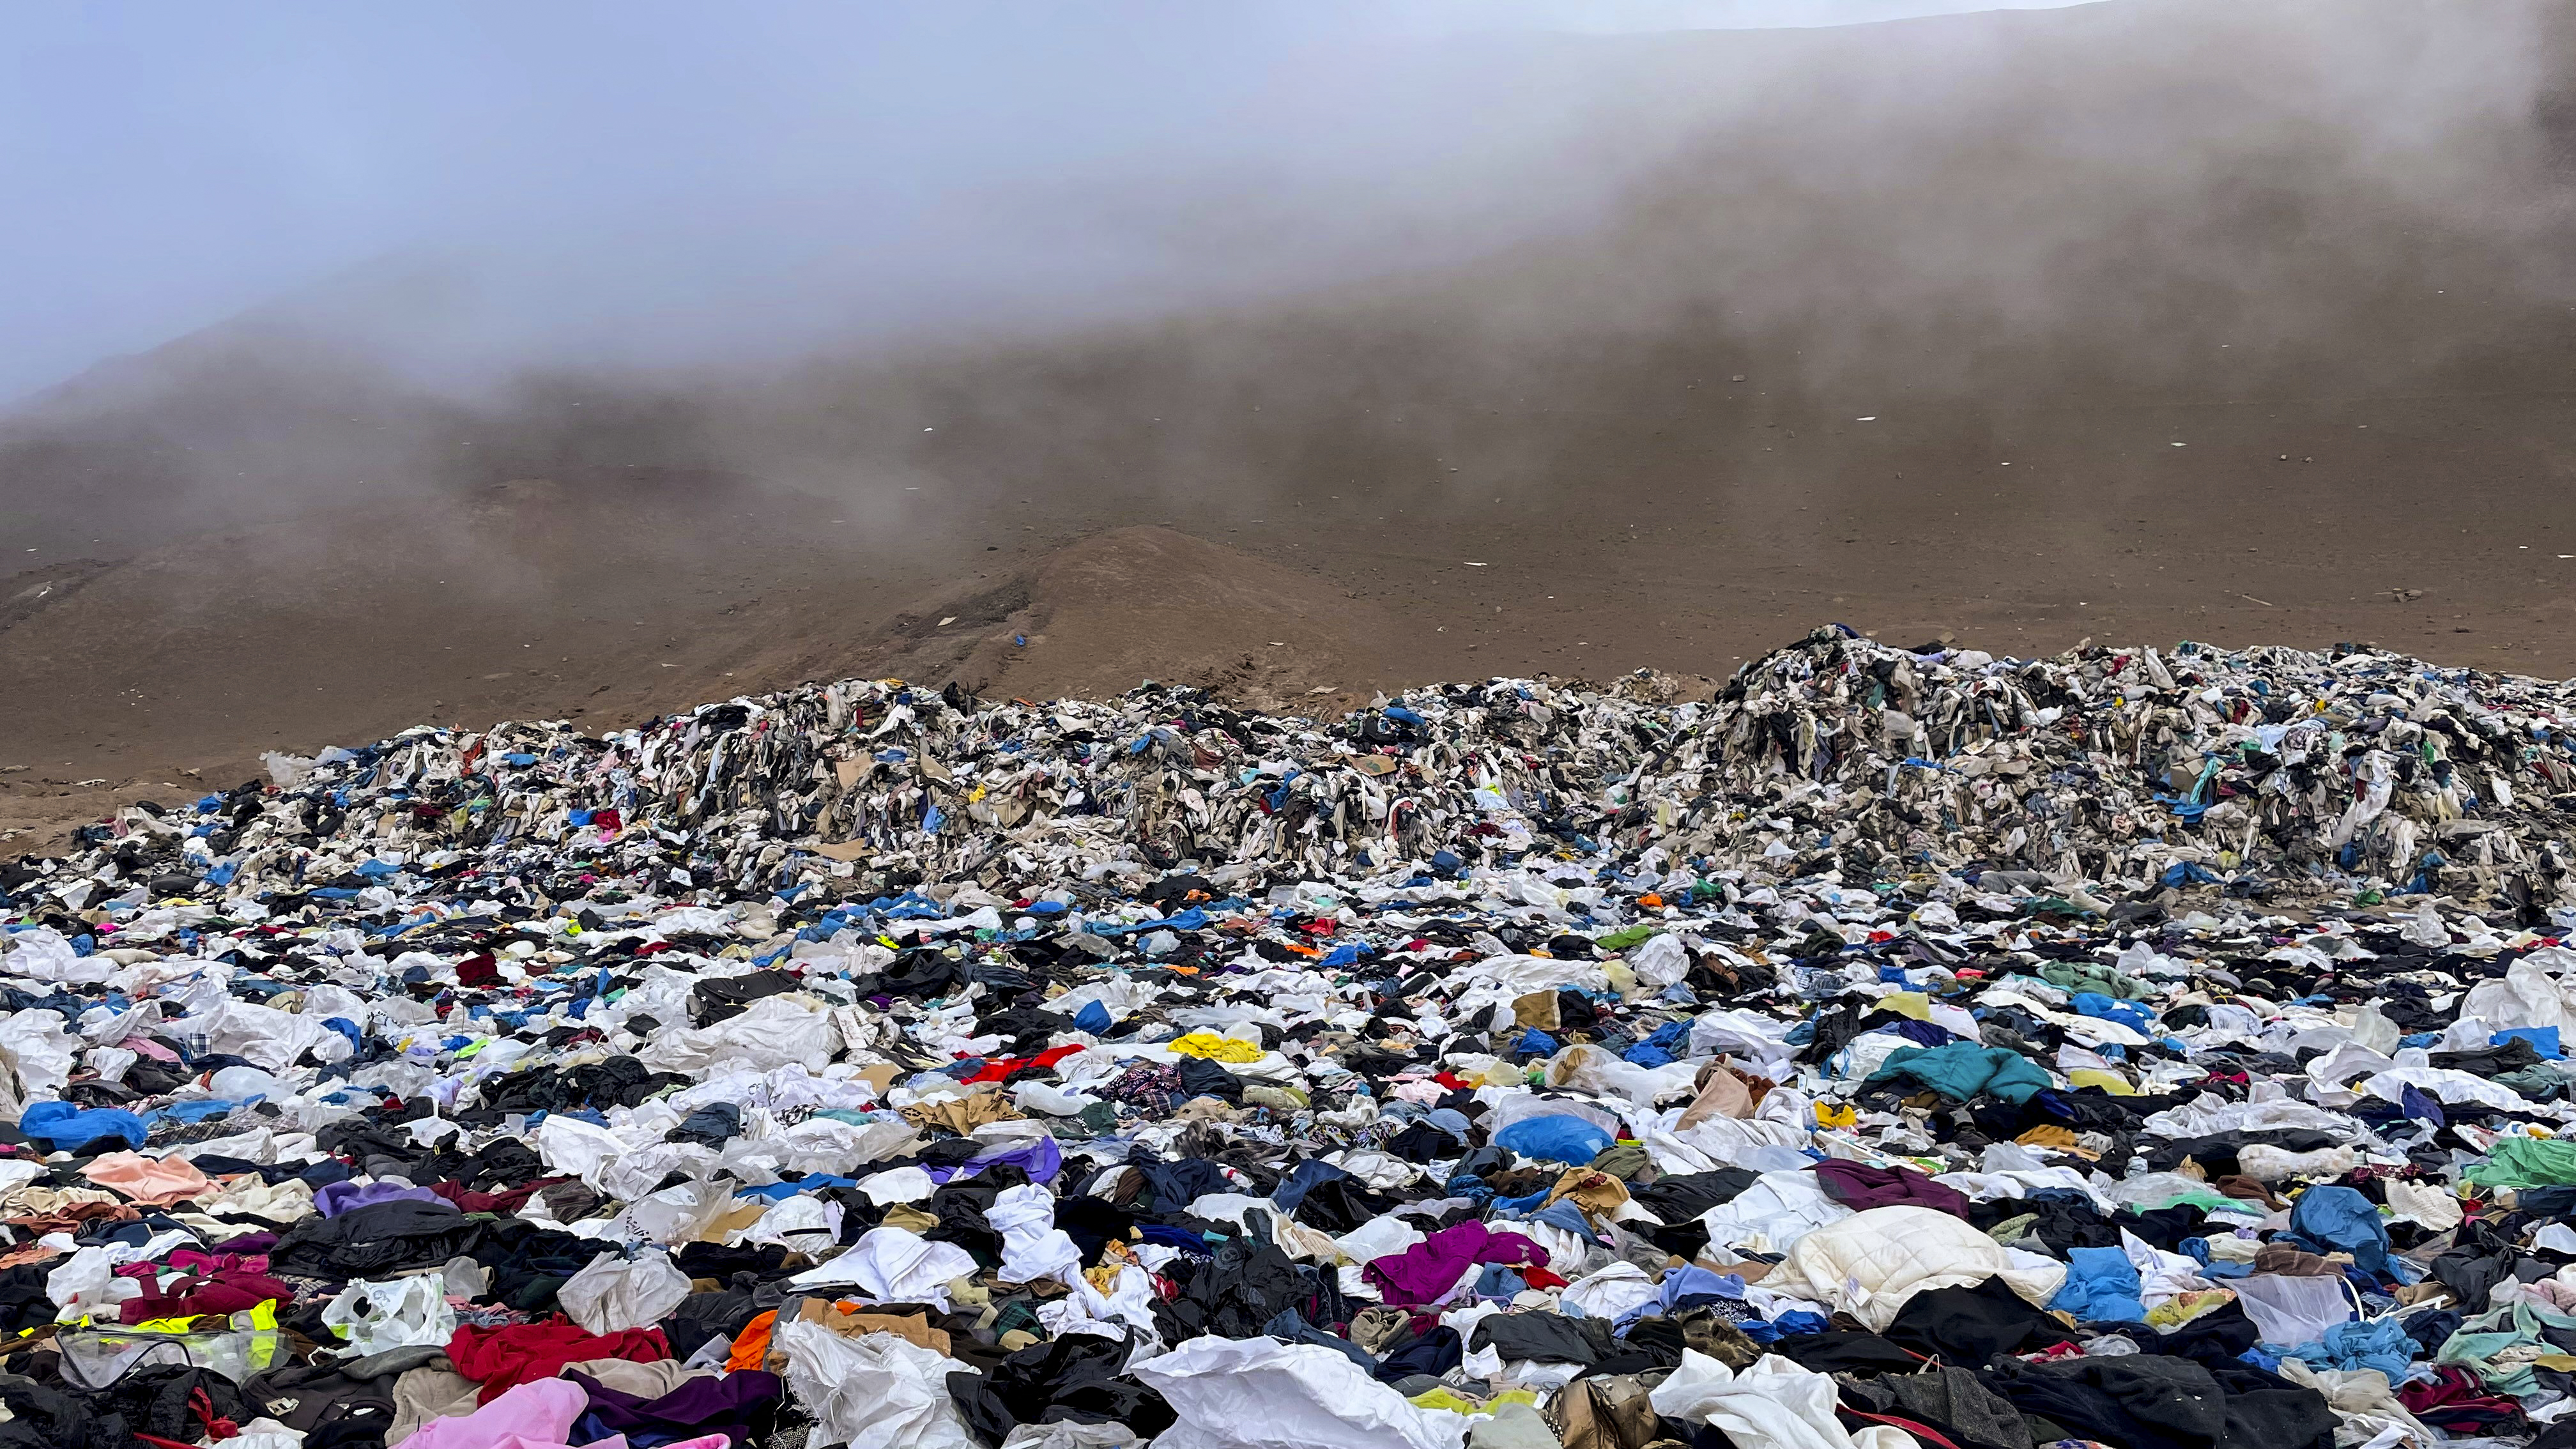 En el desierto de Atacama, el cementerio tóxico de la moda descartable (Fotos)